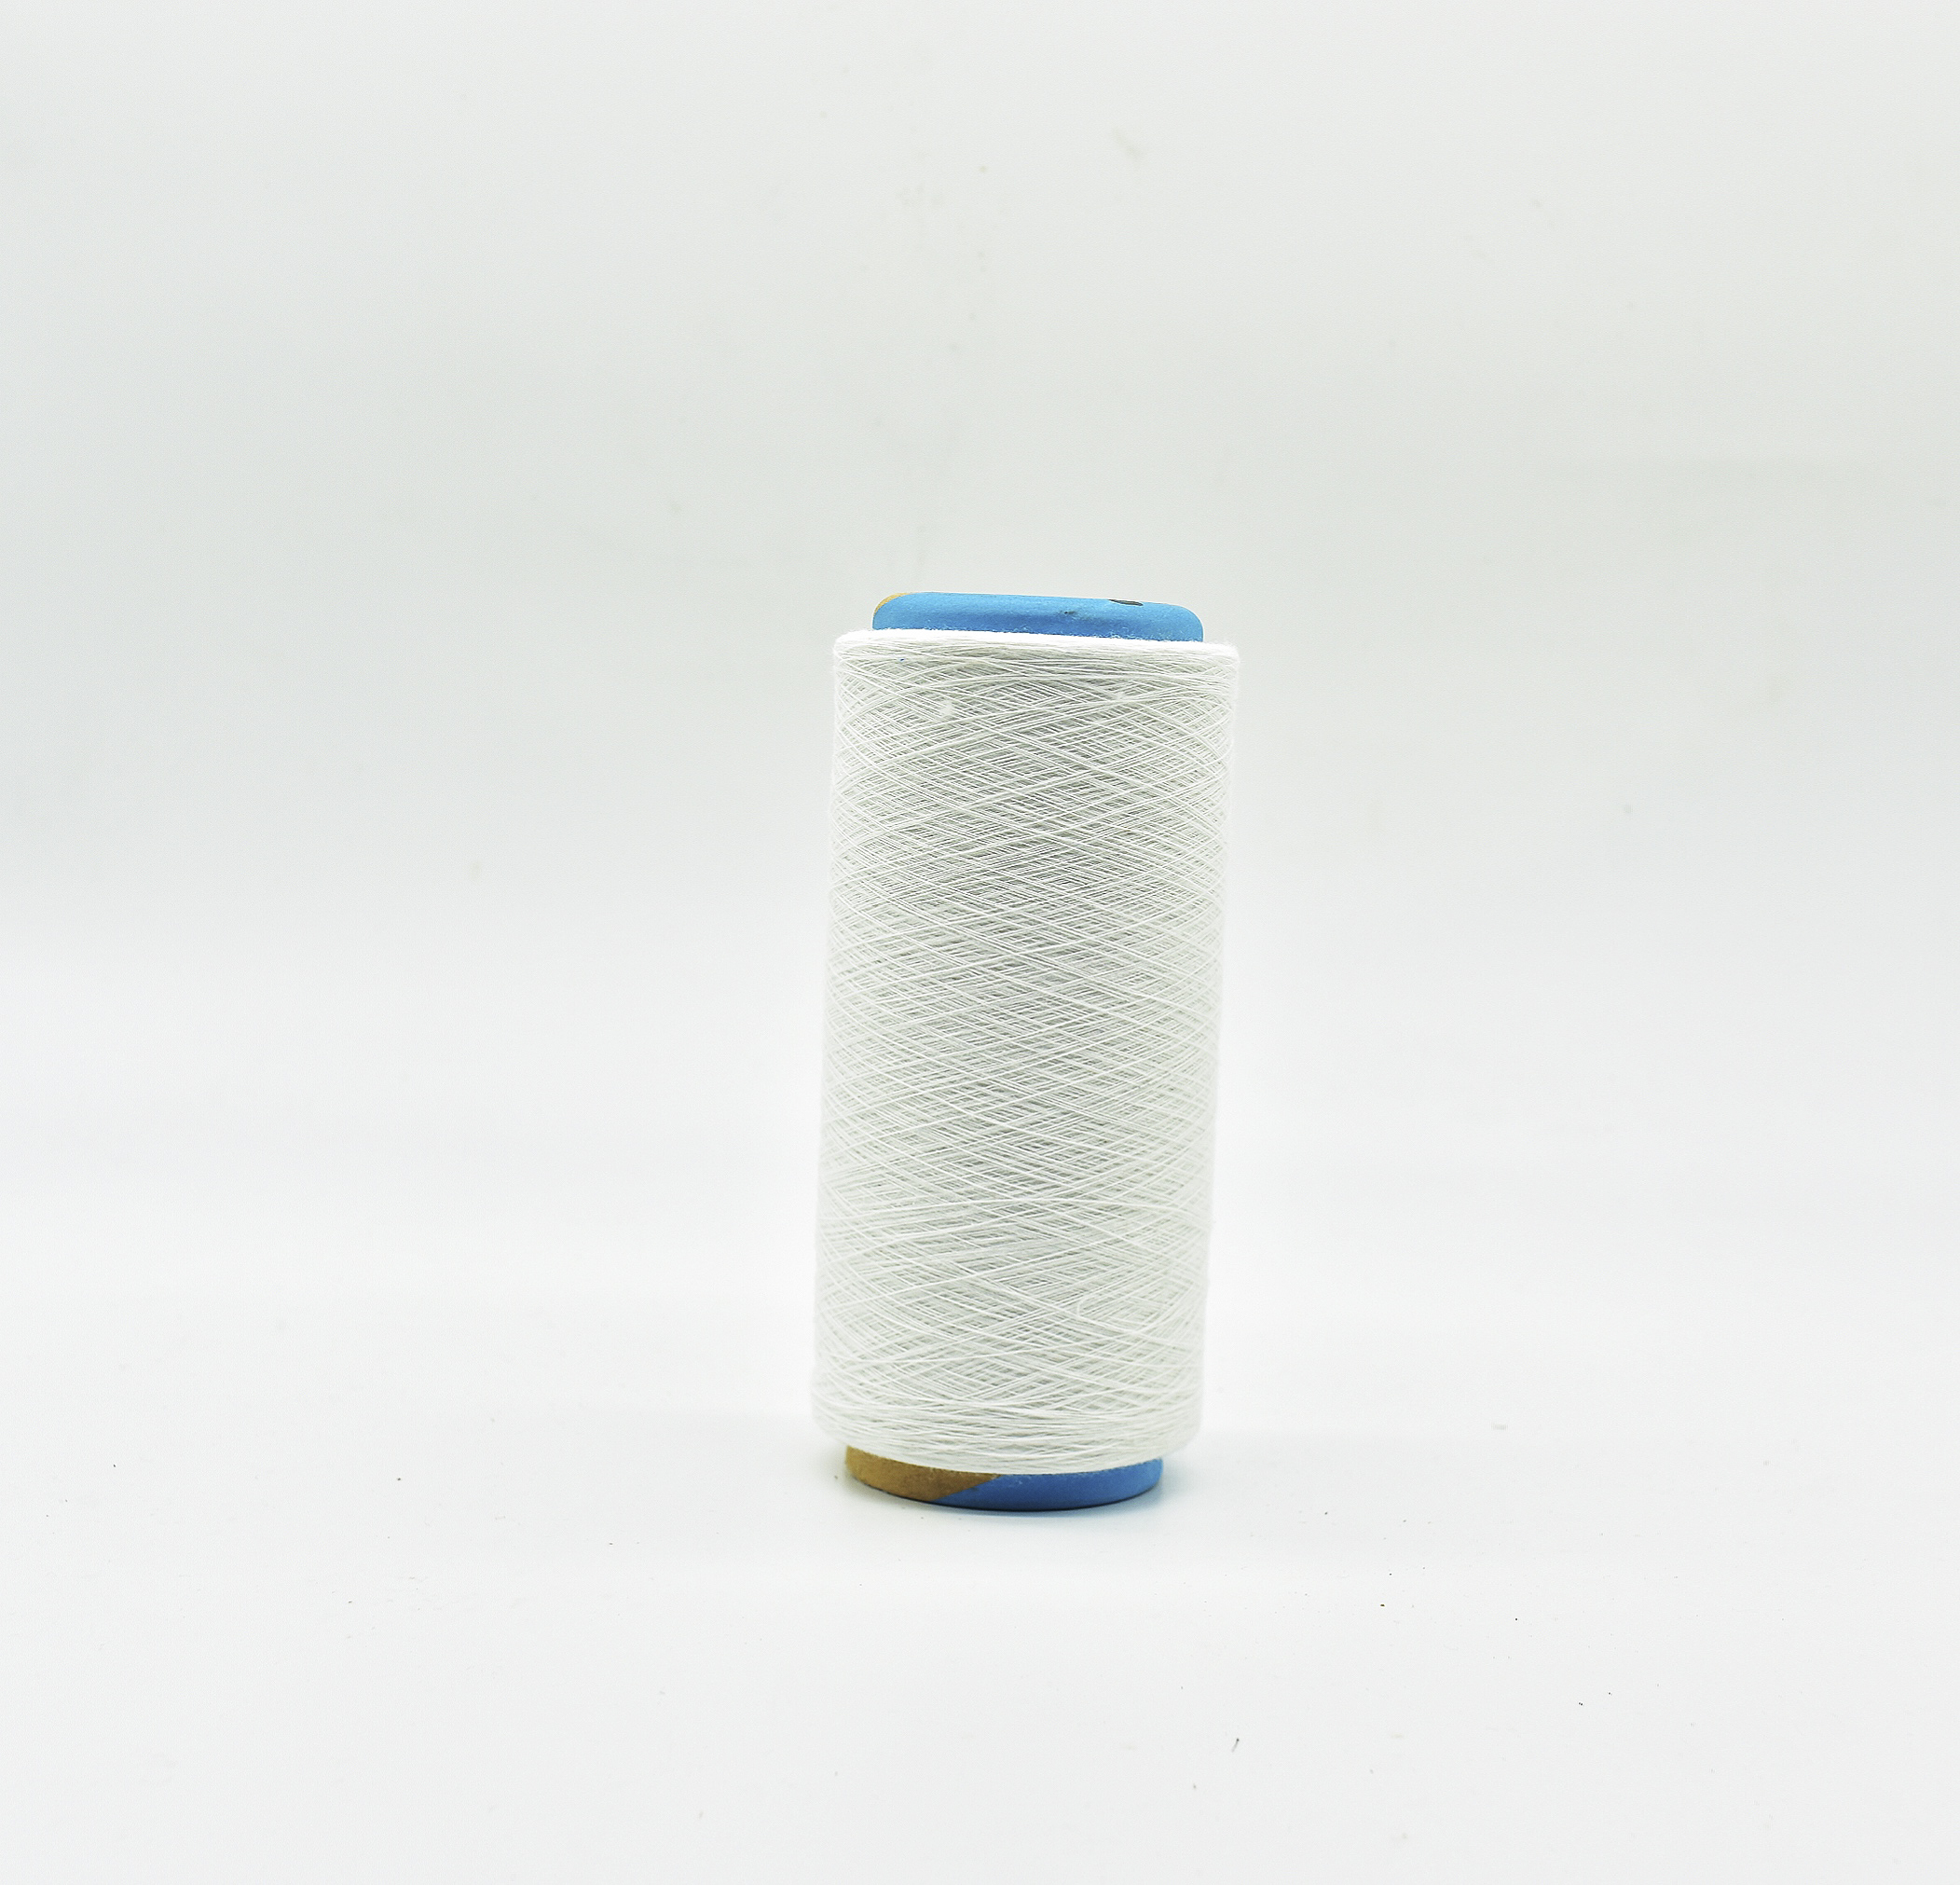 NE 21S Fio de poliéster de algodão reciclado branco óptico para tricô circular